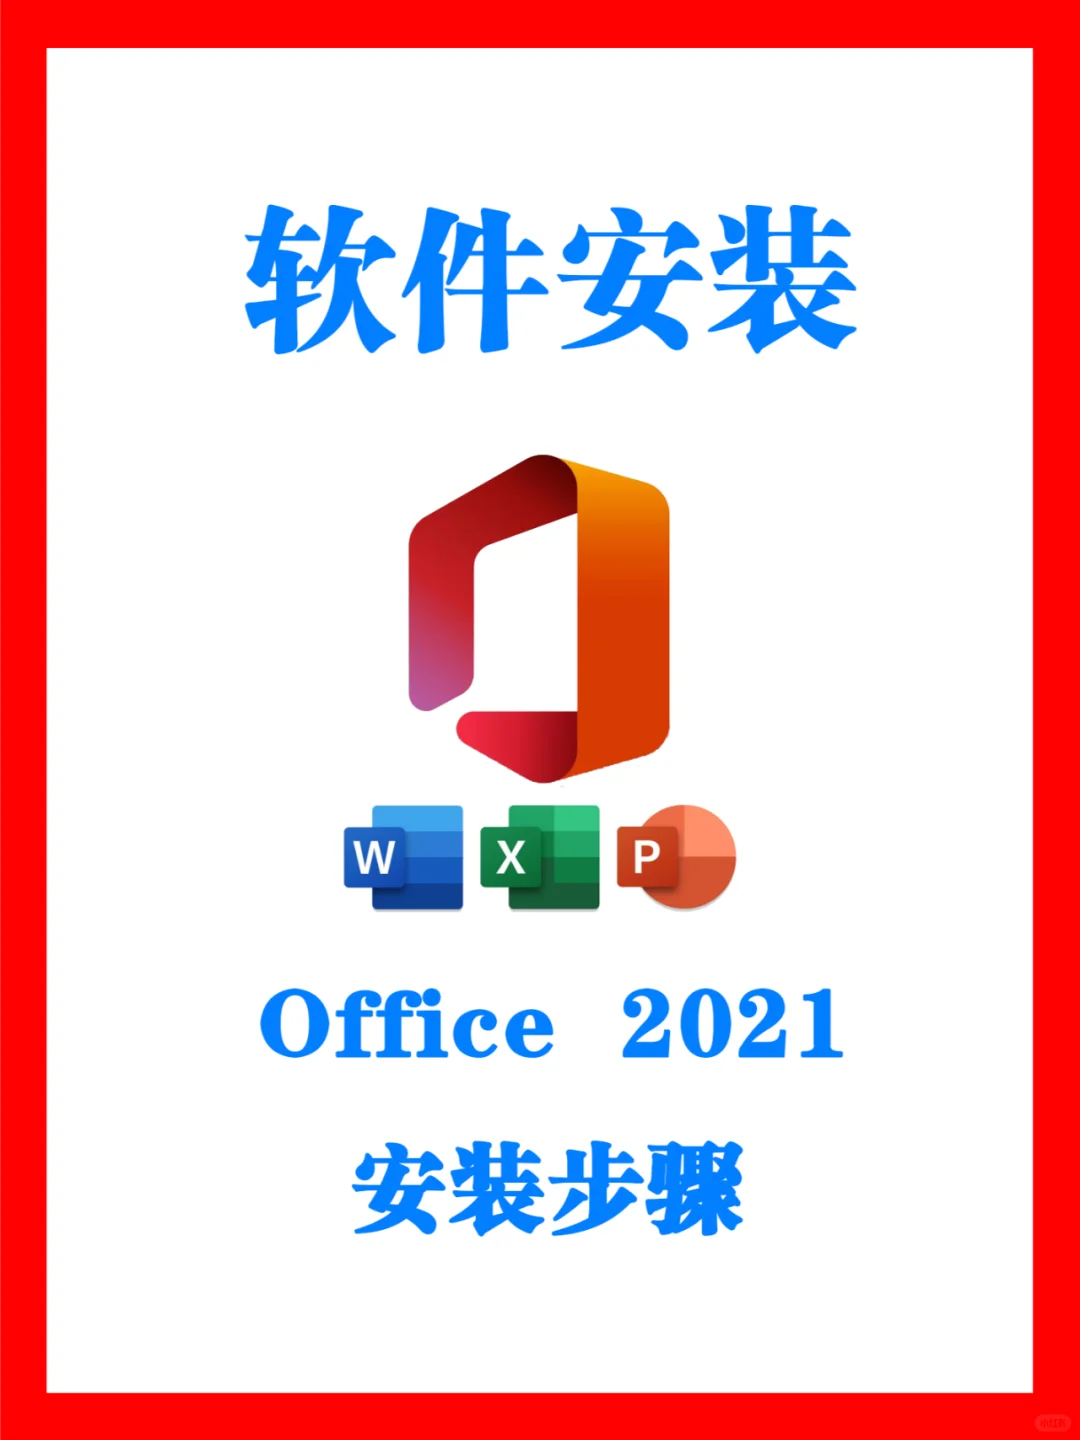 Office 2021 办公软件下载和安装步骤